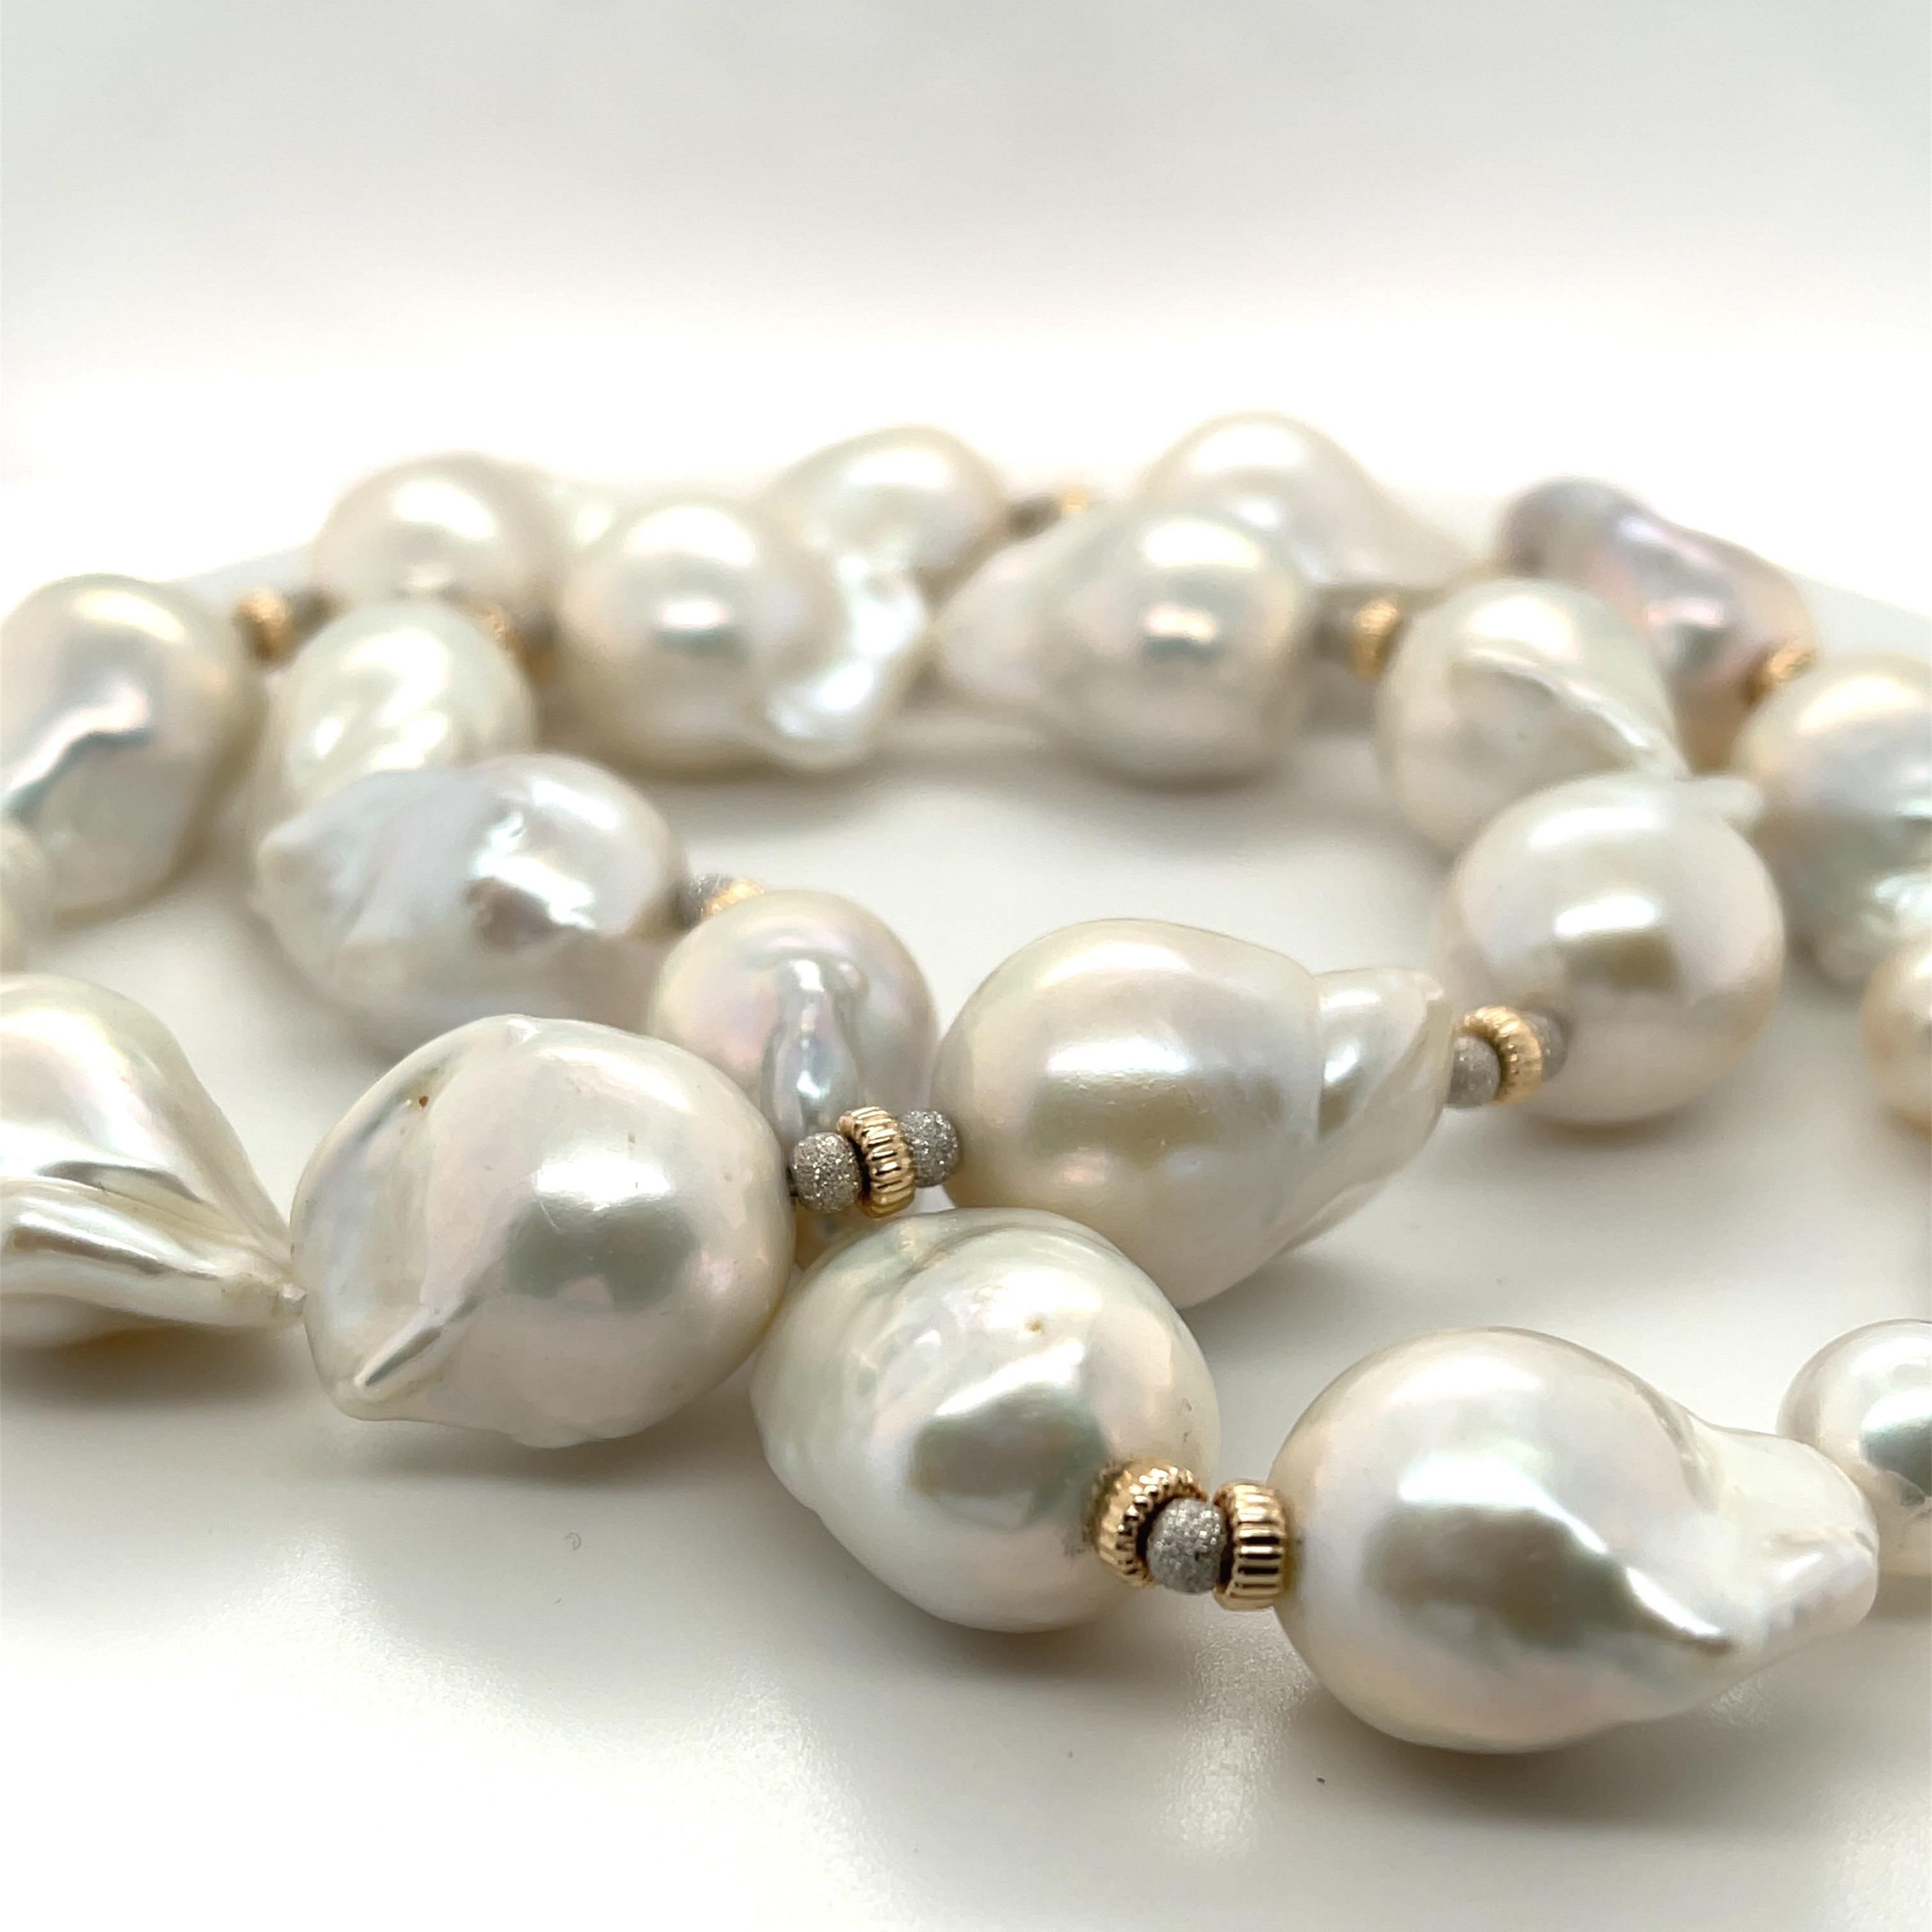 Ce collier impressionnant comprend 19 grandes perles d'eau douce baroques blanches nucléées dont la taille varie de 14 à 16 mm ! Elles présentent de magnifiques perles blanches et blanc argenté et ont été enfilées à la main sur un fil de soie avec